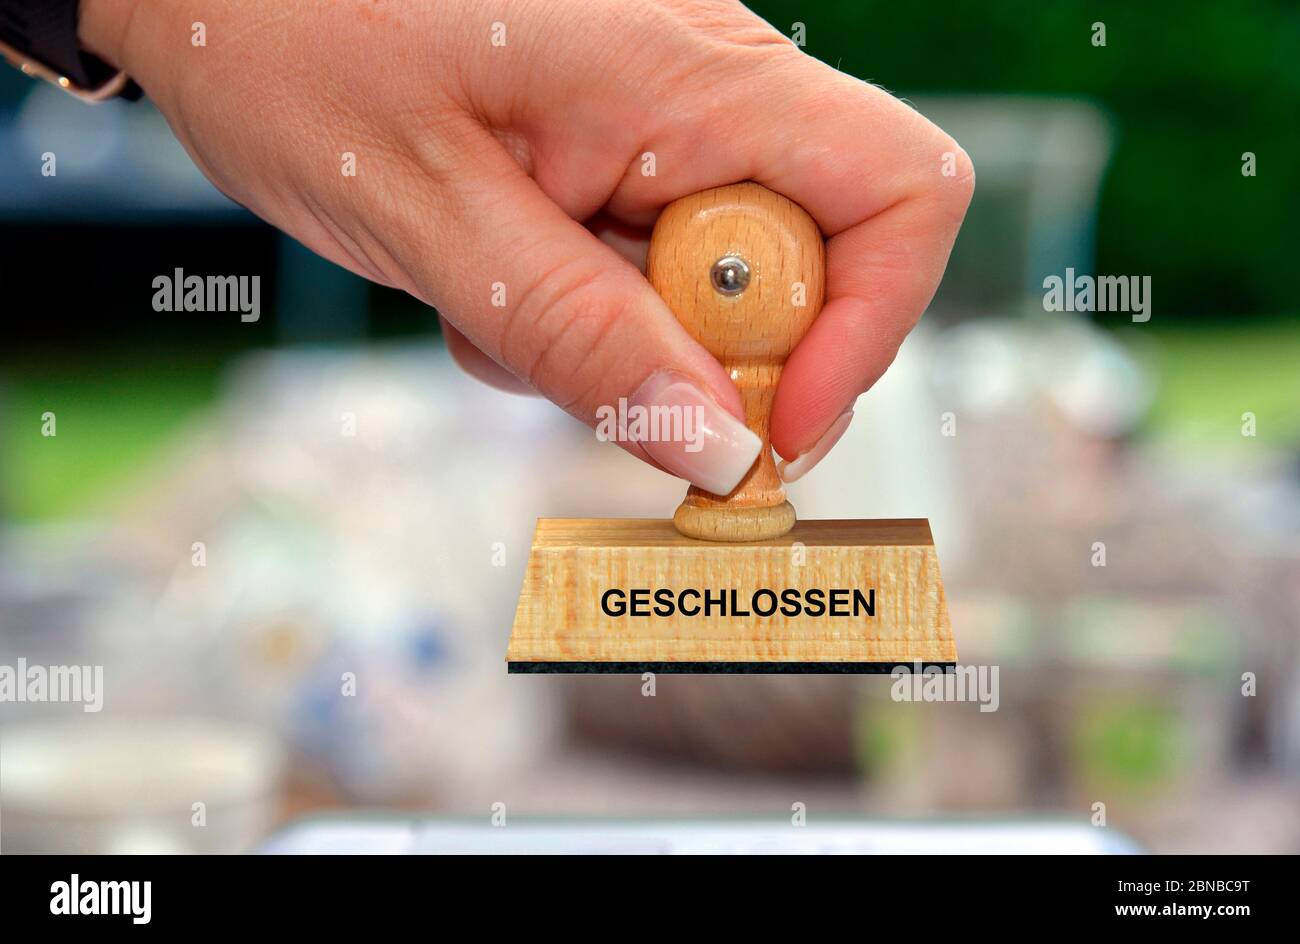 Stempel in der Hand einer Frau Schriftzug geschlossen, close, Germany Stockfoto